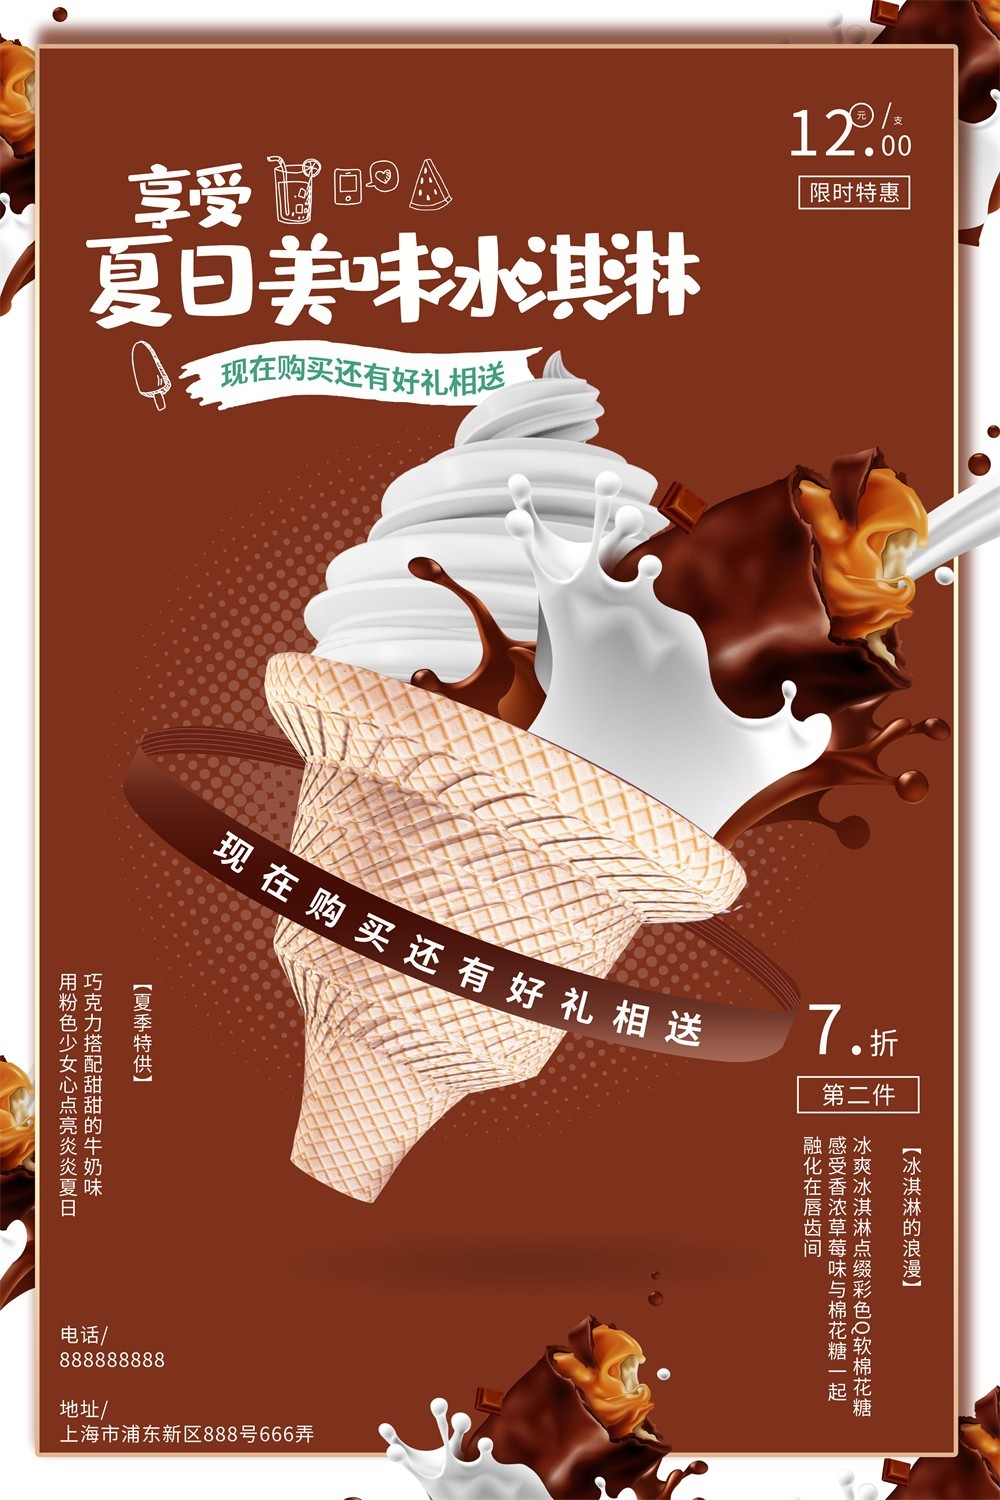 夏季特供巧克力冰淇淋促销海报